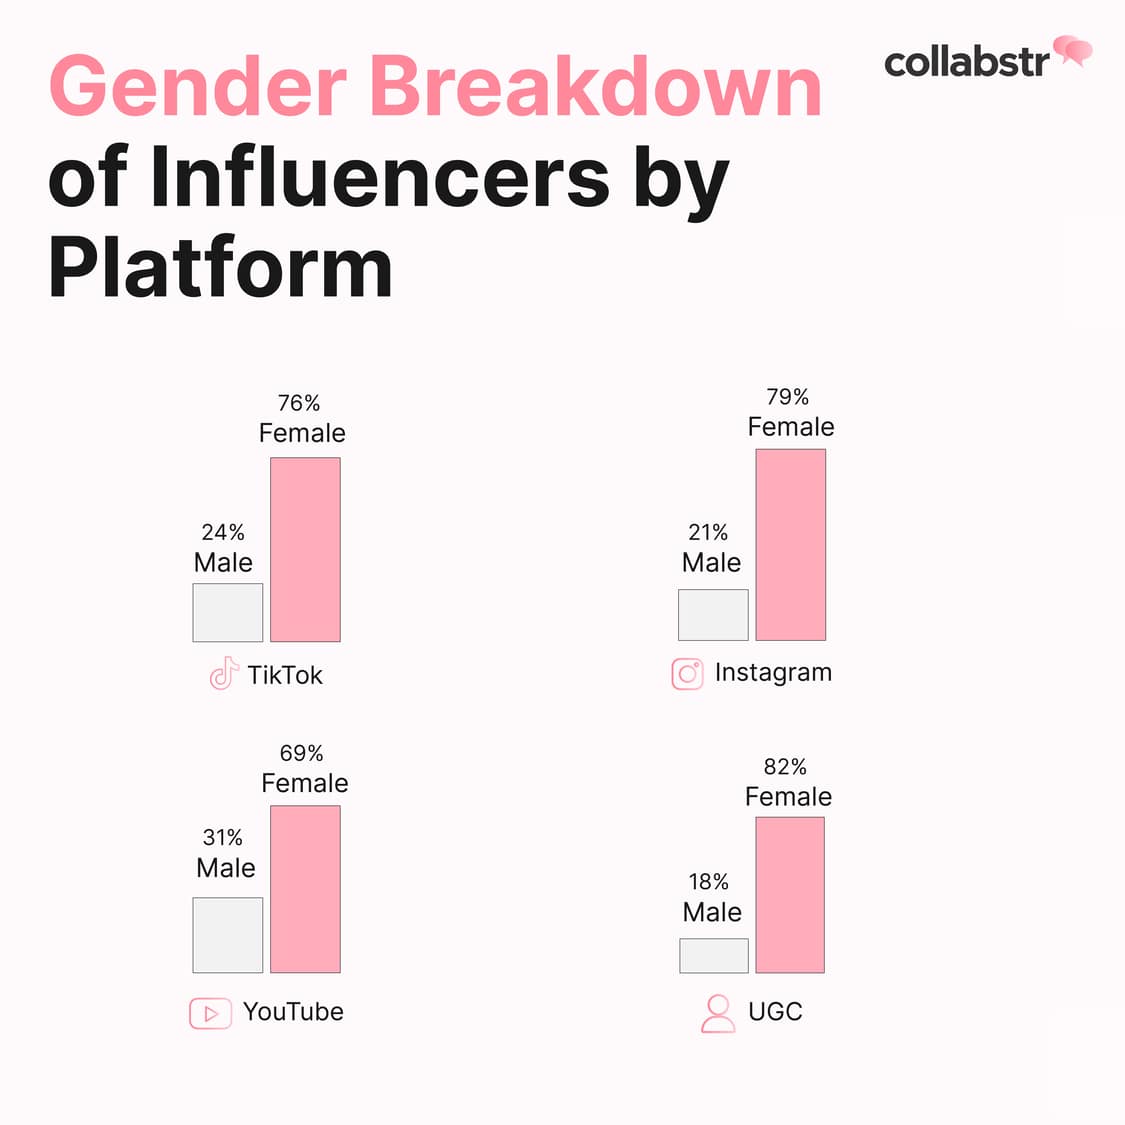 Gender breakdown of influencers by platform.